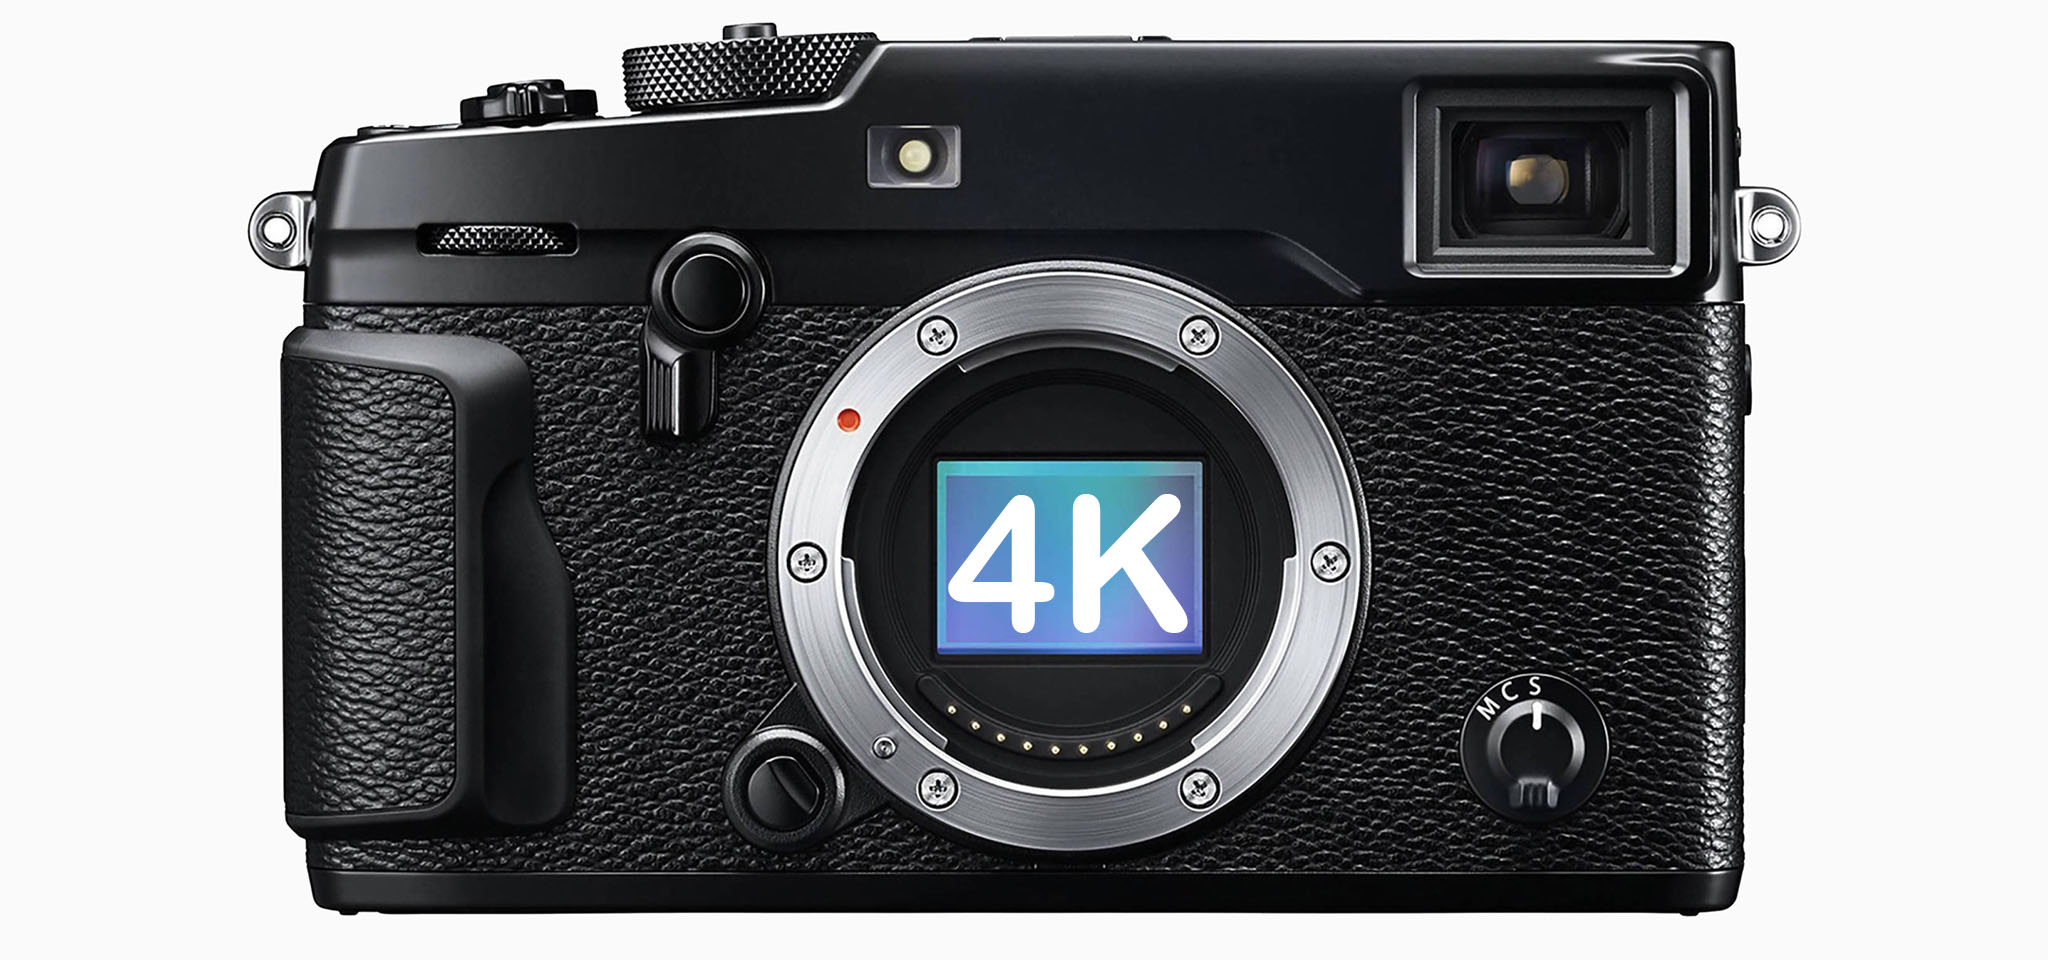 Tải về ngay firmware 4.0 cho Fujifilm X-Pro2: Đã quay được 4K, lấy nét nhanh hơn ,...